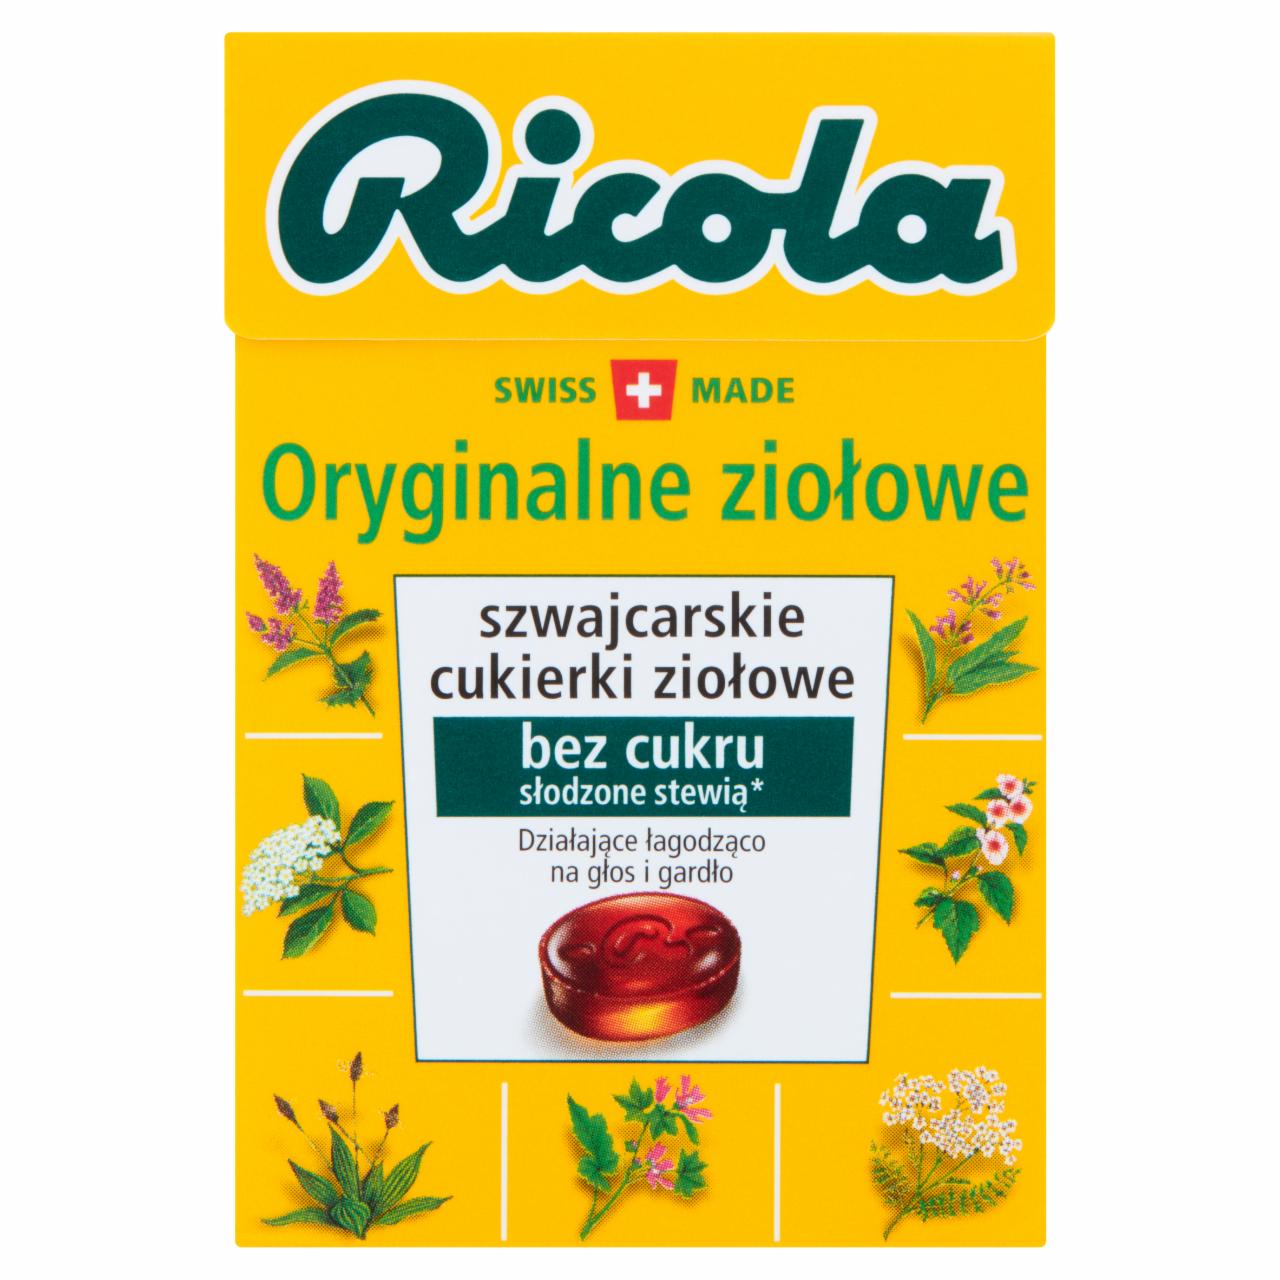 Zdjęcia - Ricola Szwajcarskie cukierki ziołowe oryginalne ziołowe 27,5 g